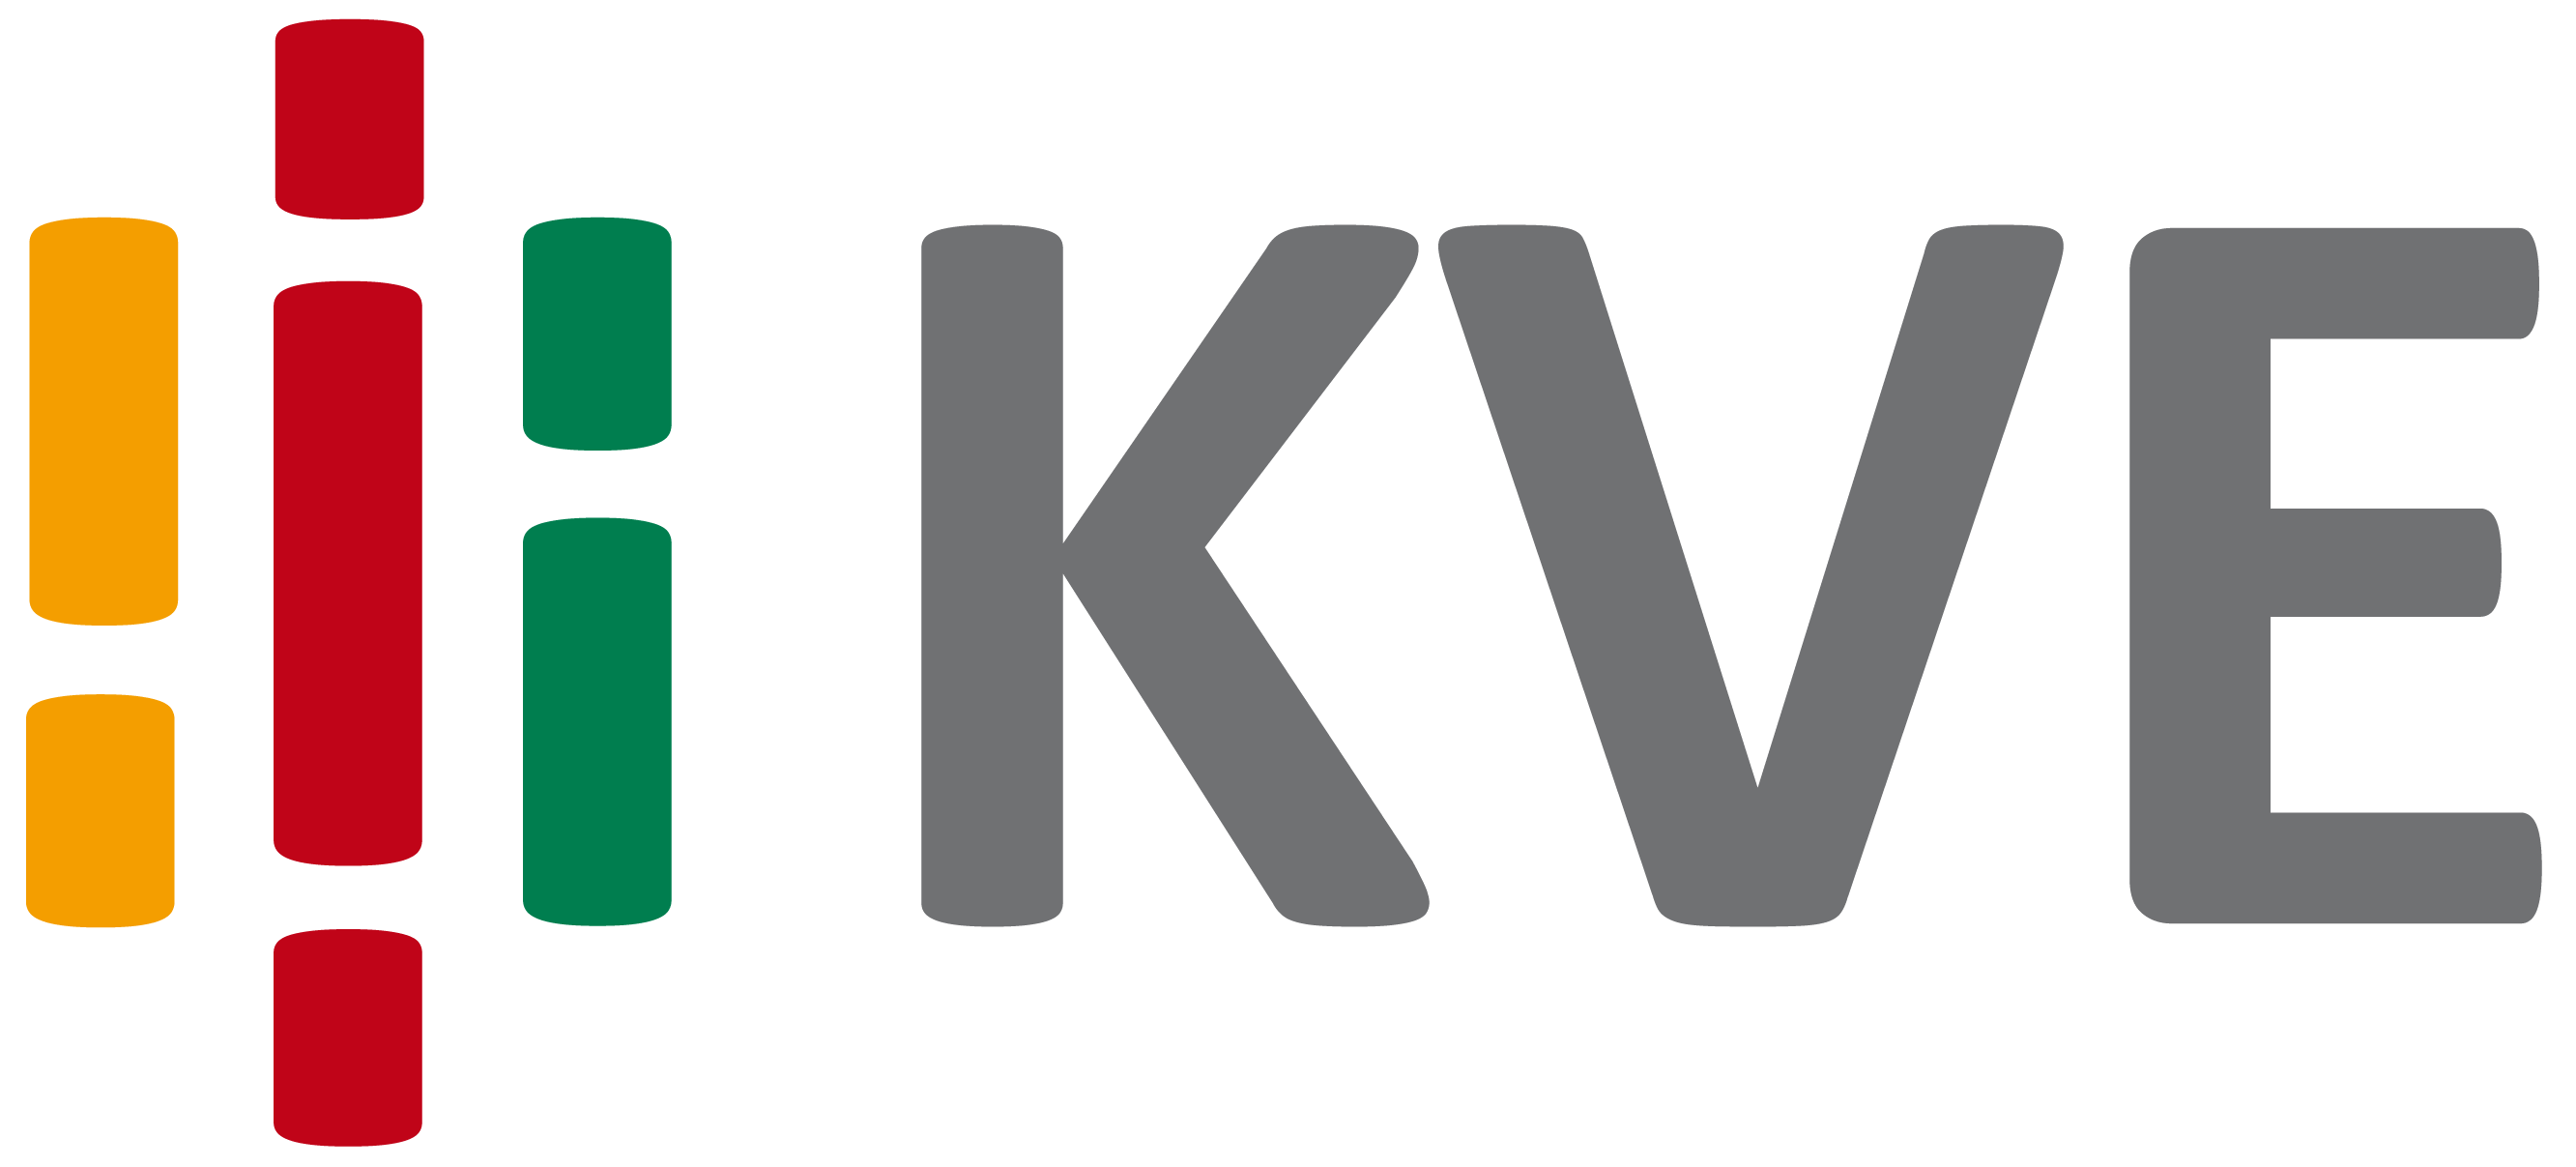 KVE Logo